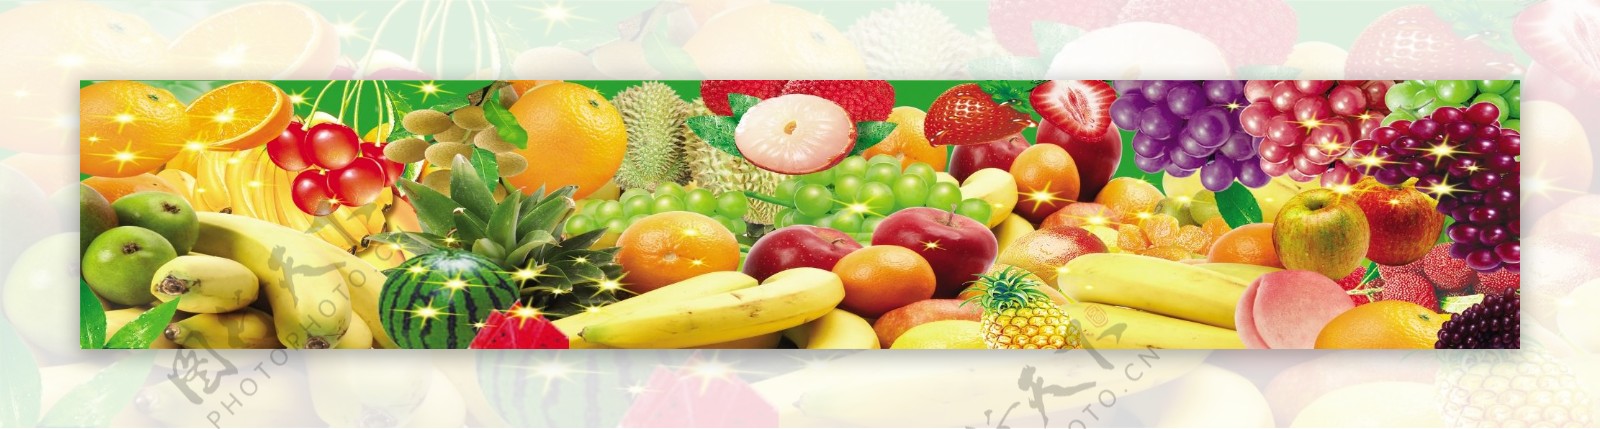 水果水果海报免费下载